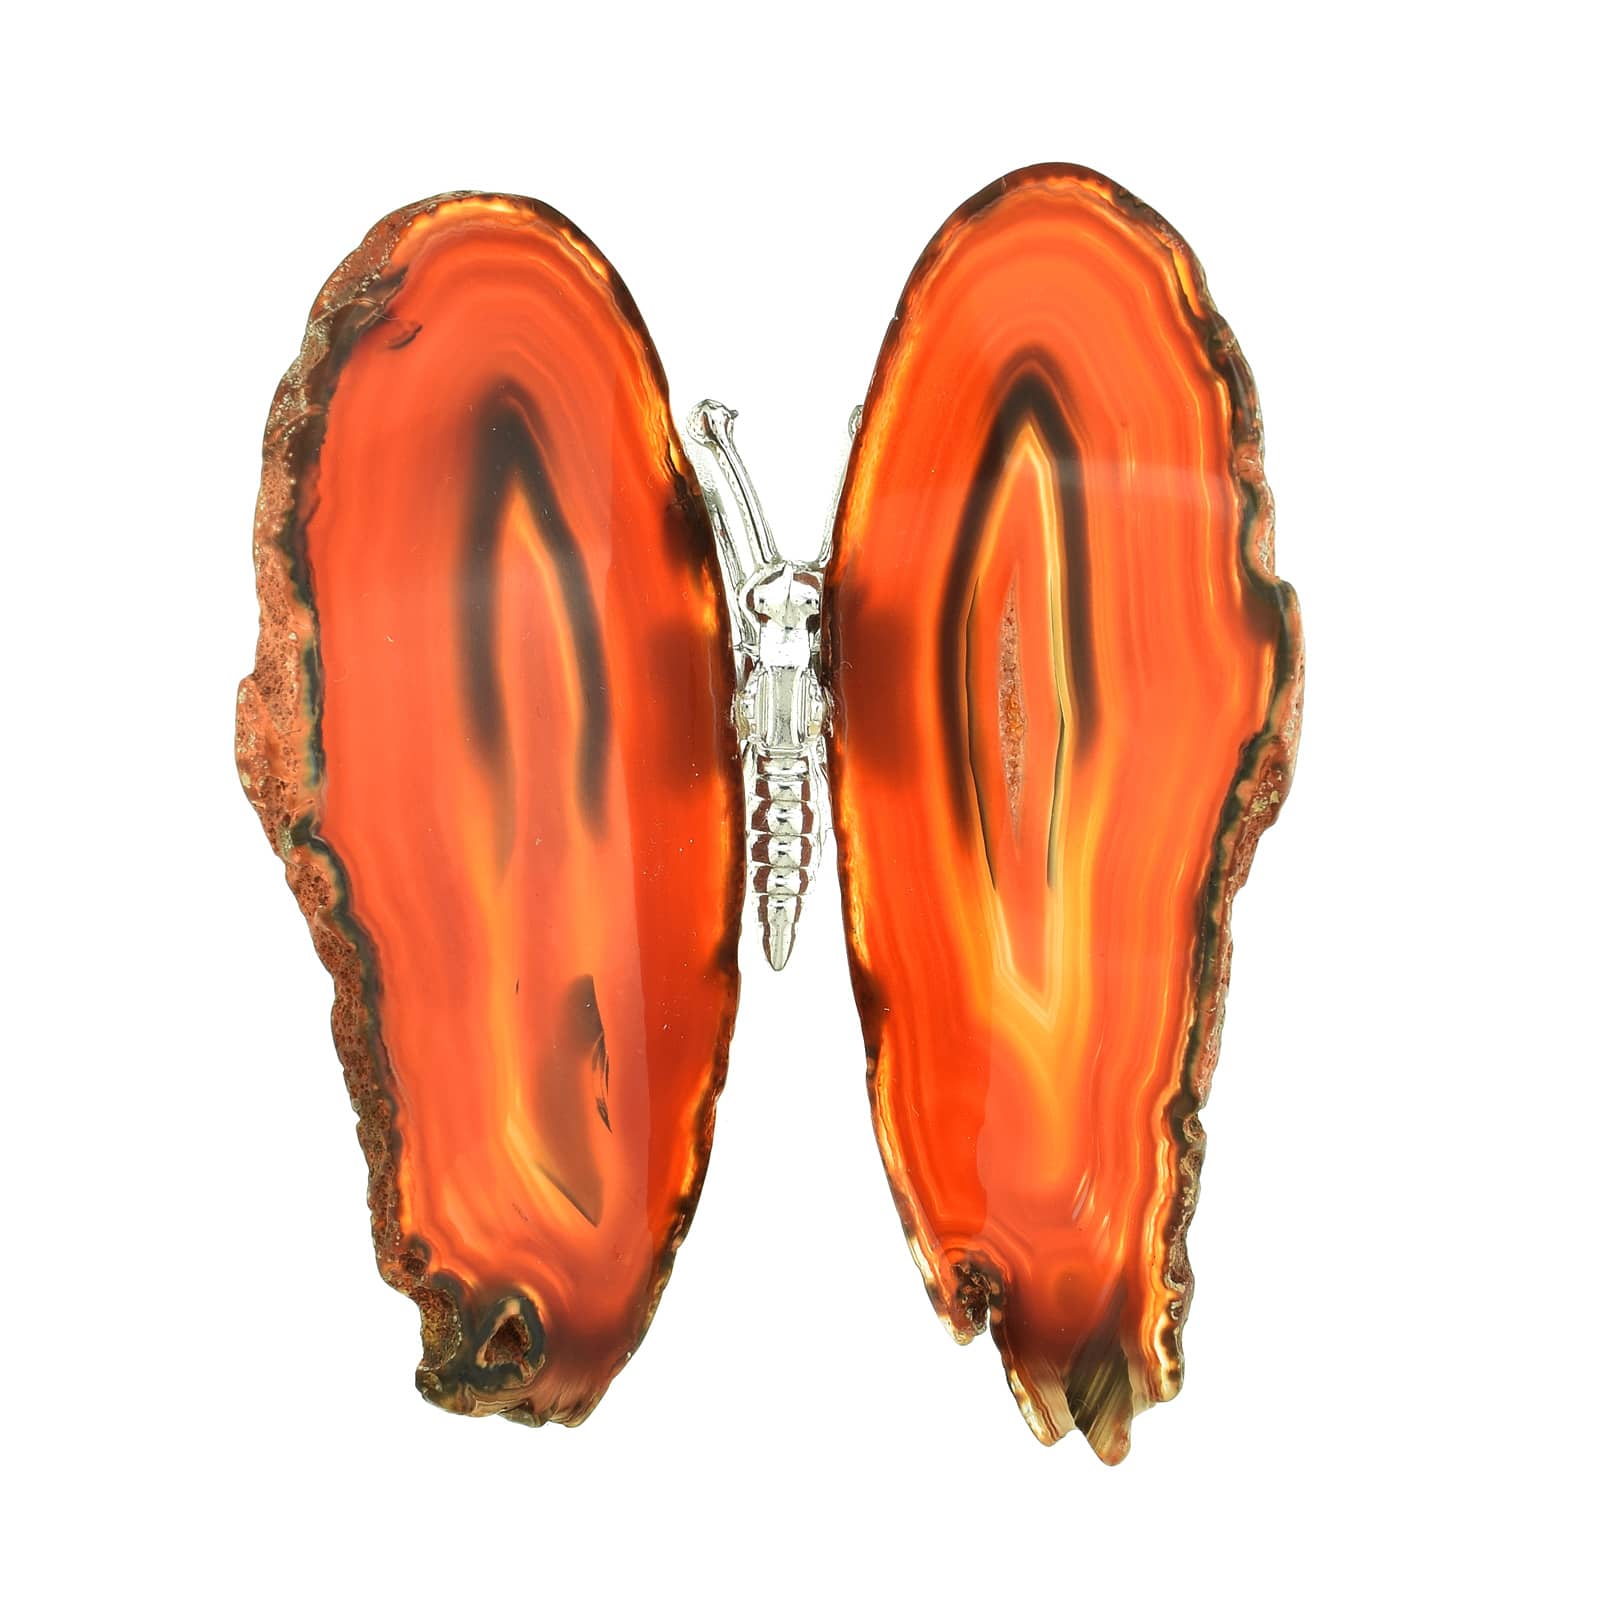 Πεταλούδα με σώμα από επαργυρωμένο μέταλλο και γυαλισμένα φτερά από καφέ Αχάτη, μήκους 11,5cm. Αγοράστε online shop.